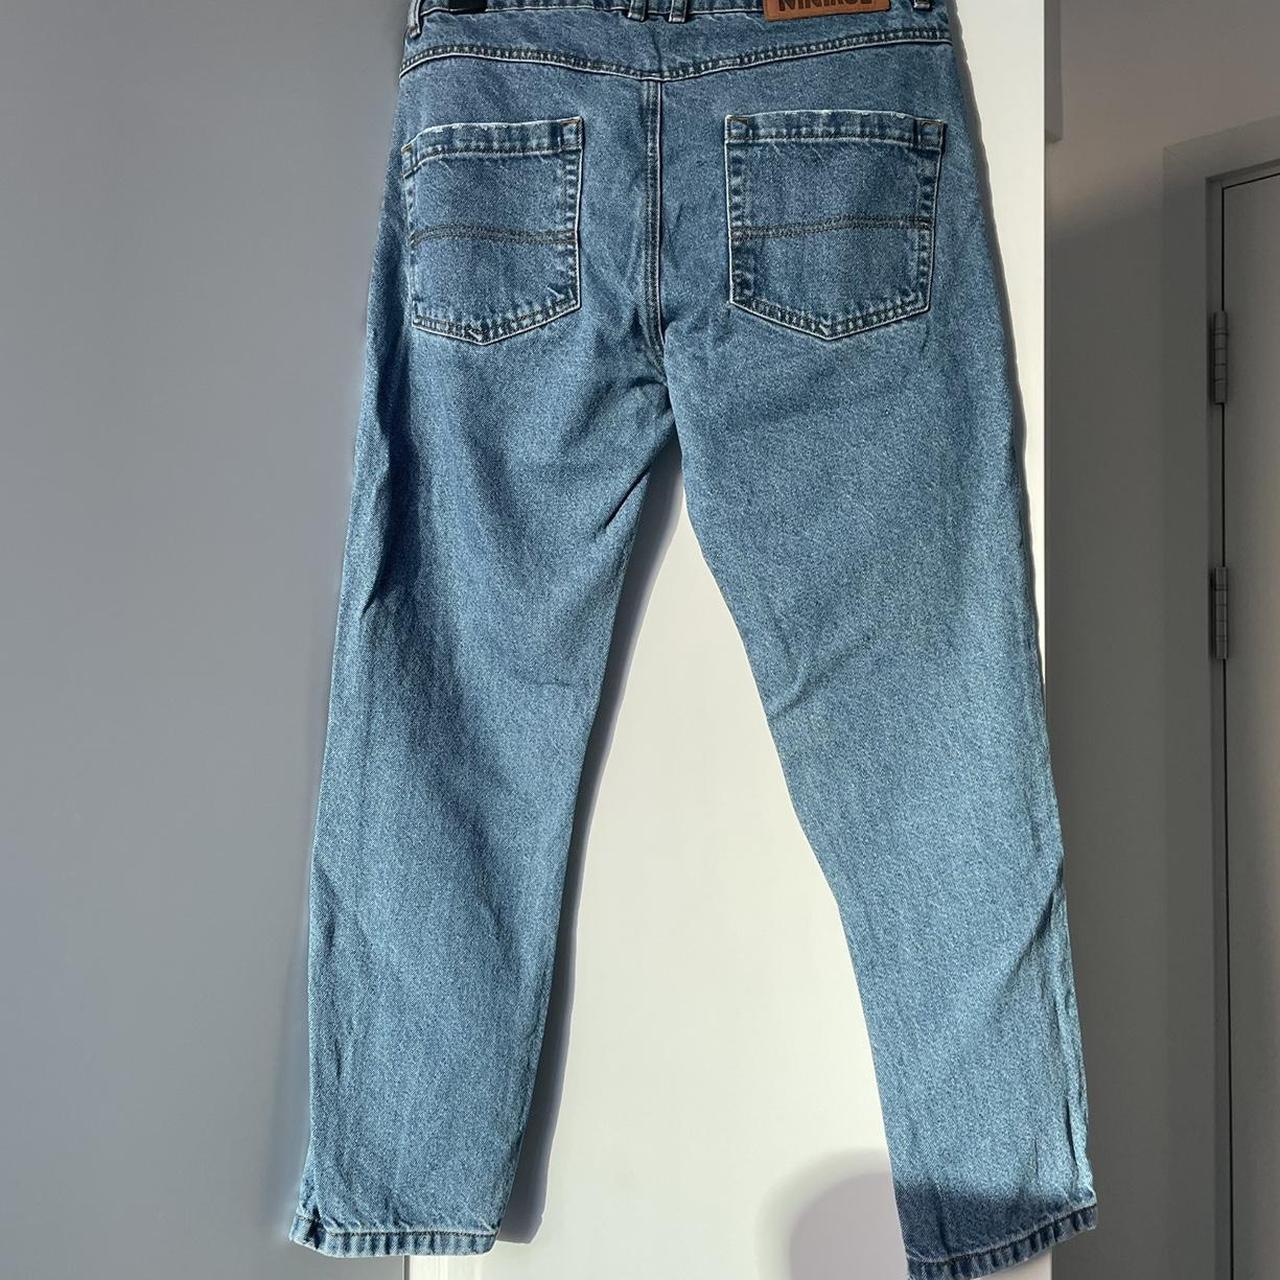 Reclaimed vintage denim jeans Rigid/skinny... - Depop